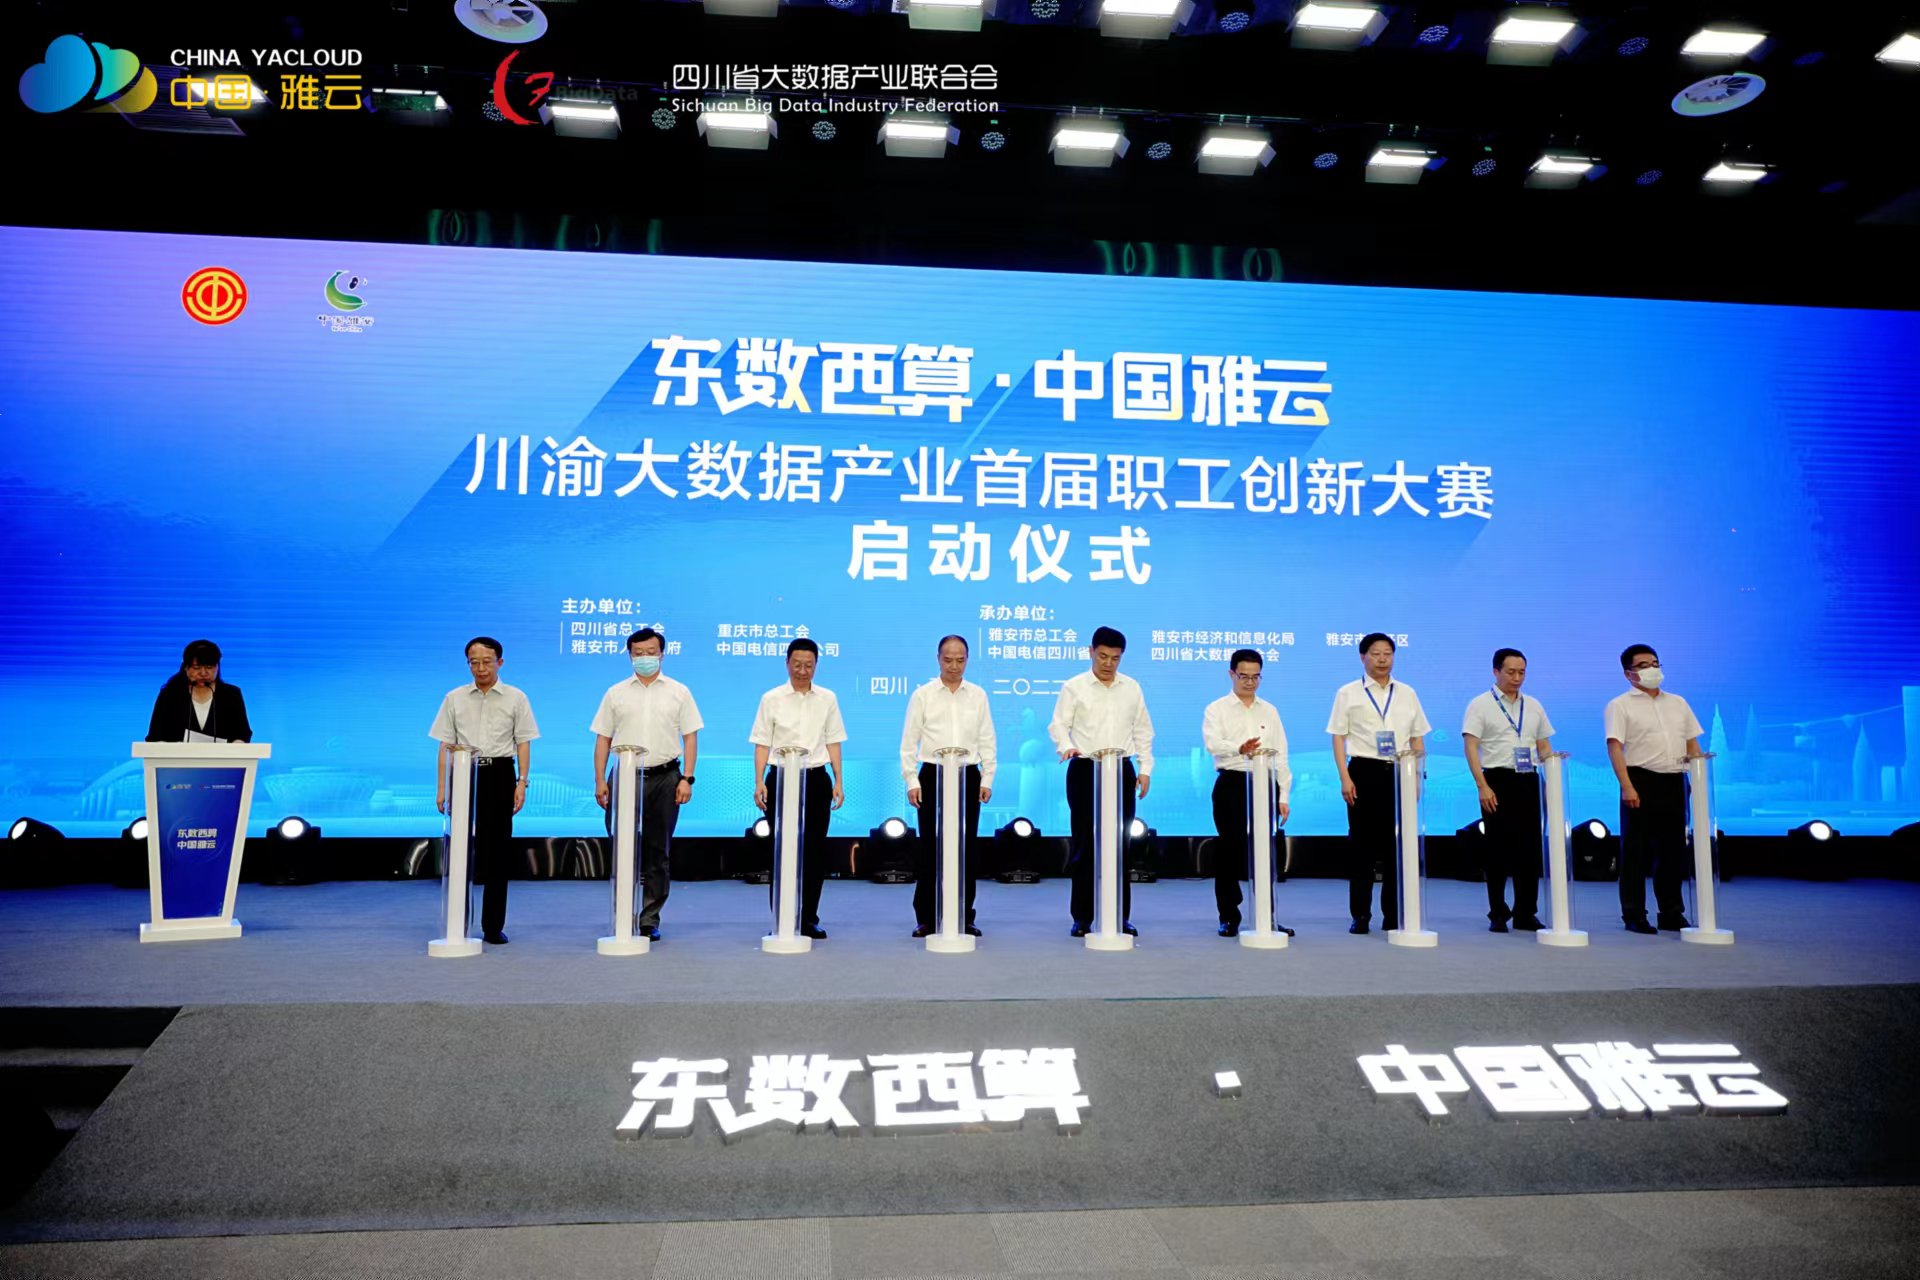 中国雅云成渝大数据产业首届创新技能大赛